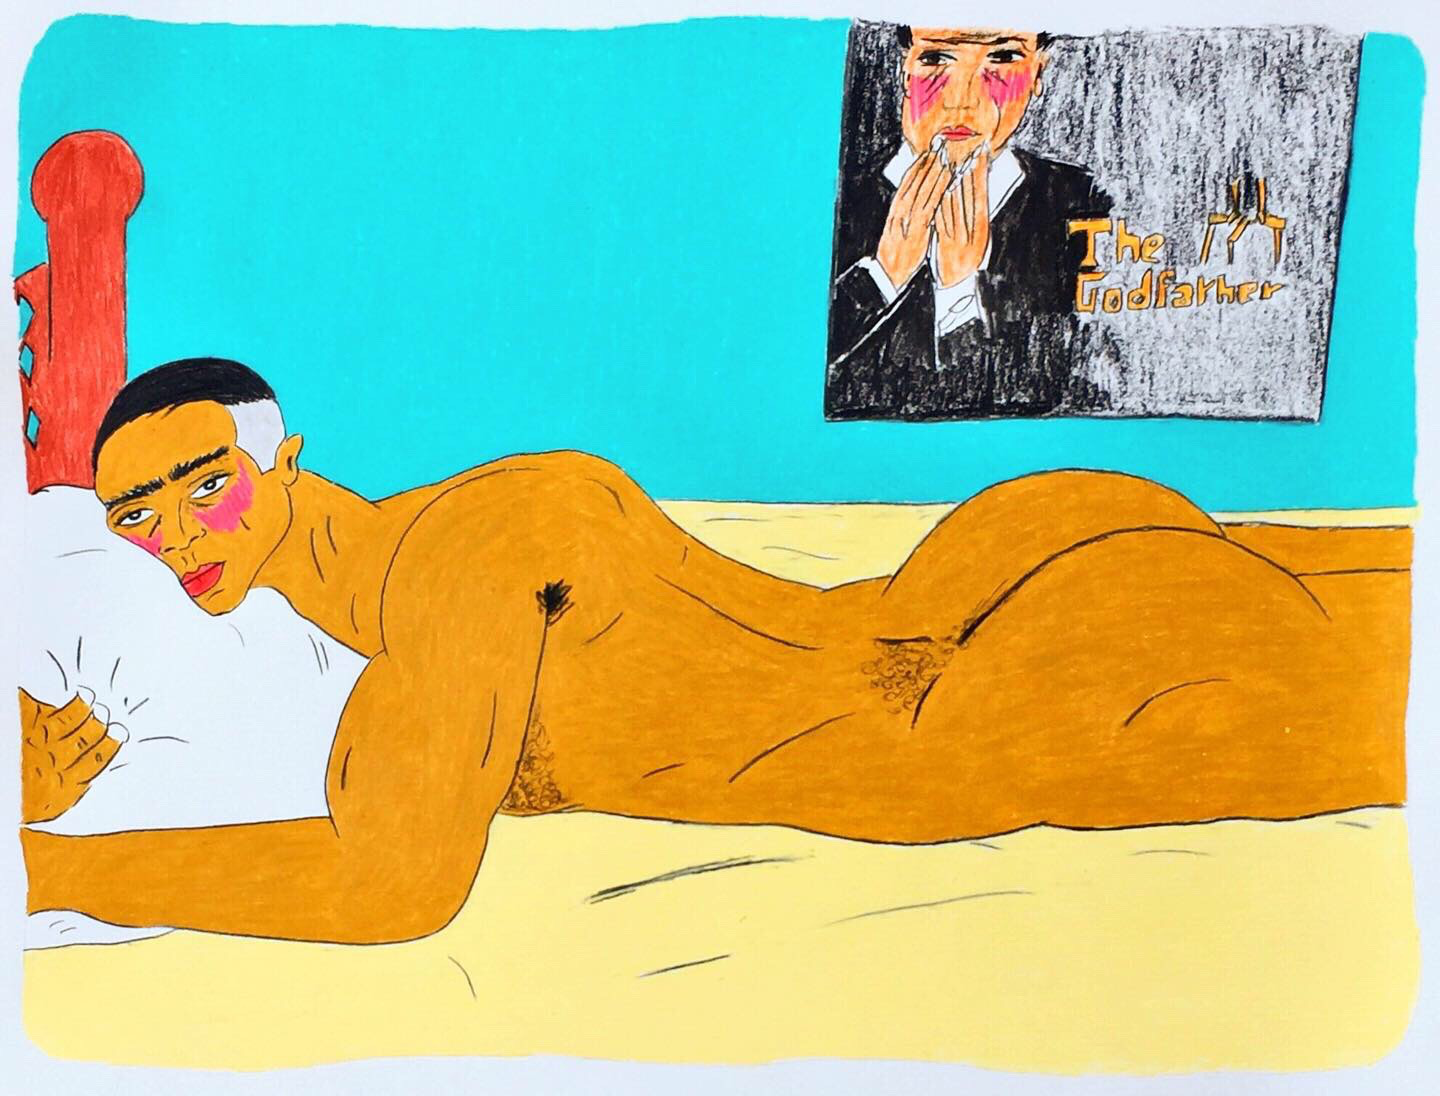 Buntstiftzeichnung von Soufiane Ababri. Ein Mann liegt nackt auf einem Bett. 